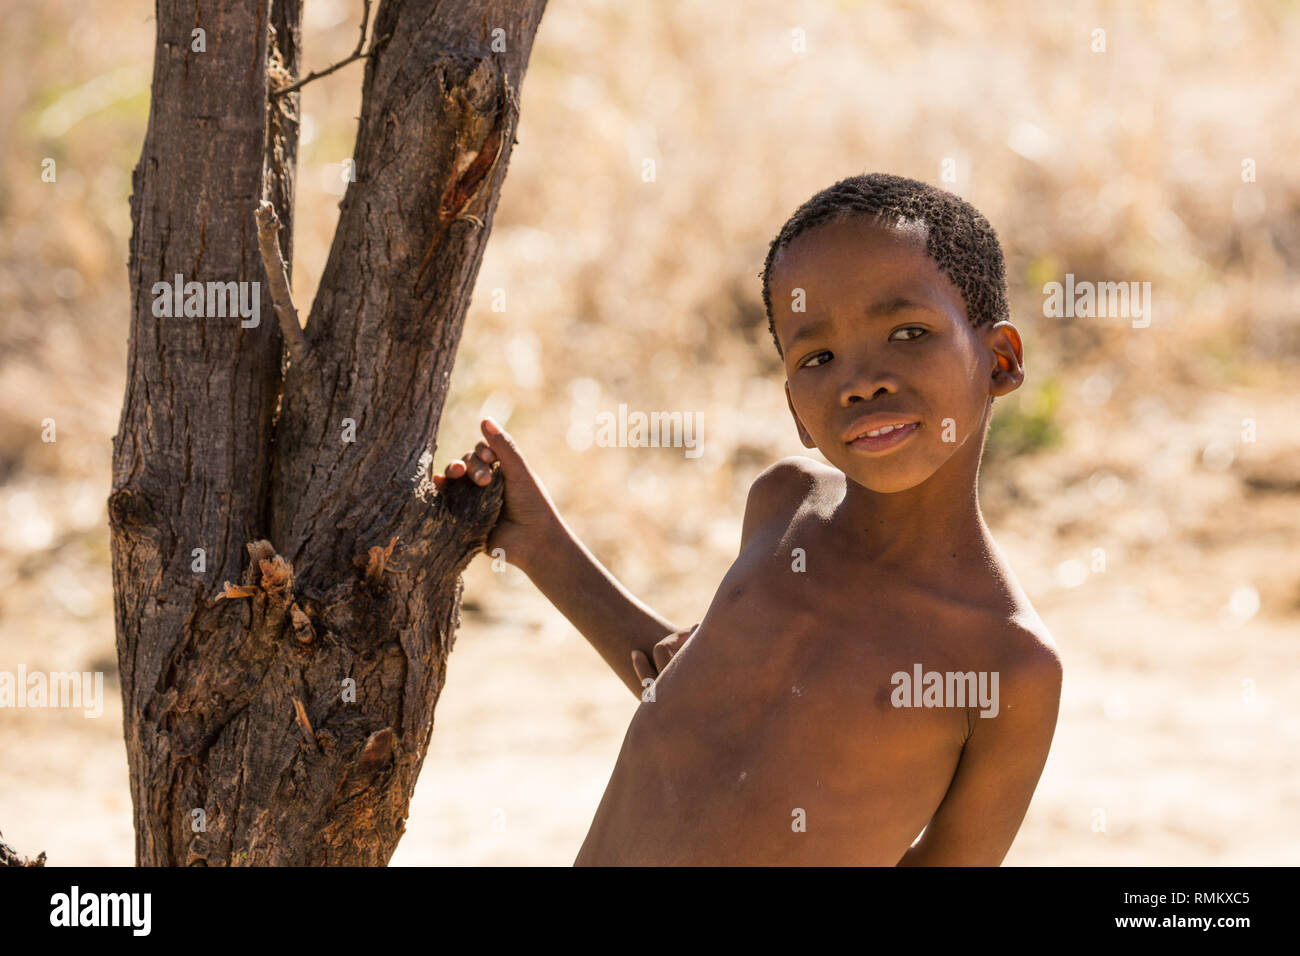 Retrato de un niño bosquimano. Fotografiado en Namibia Foto de stock